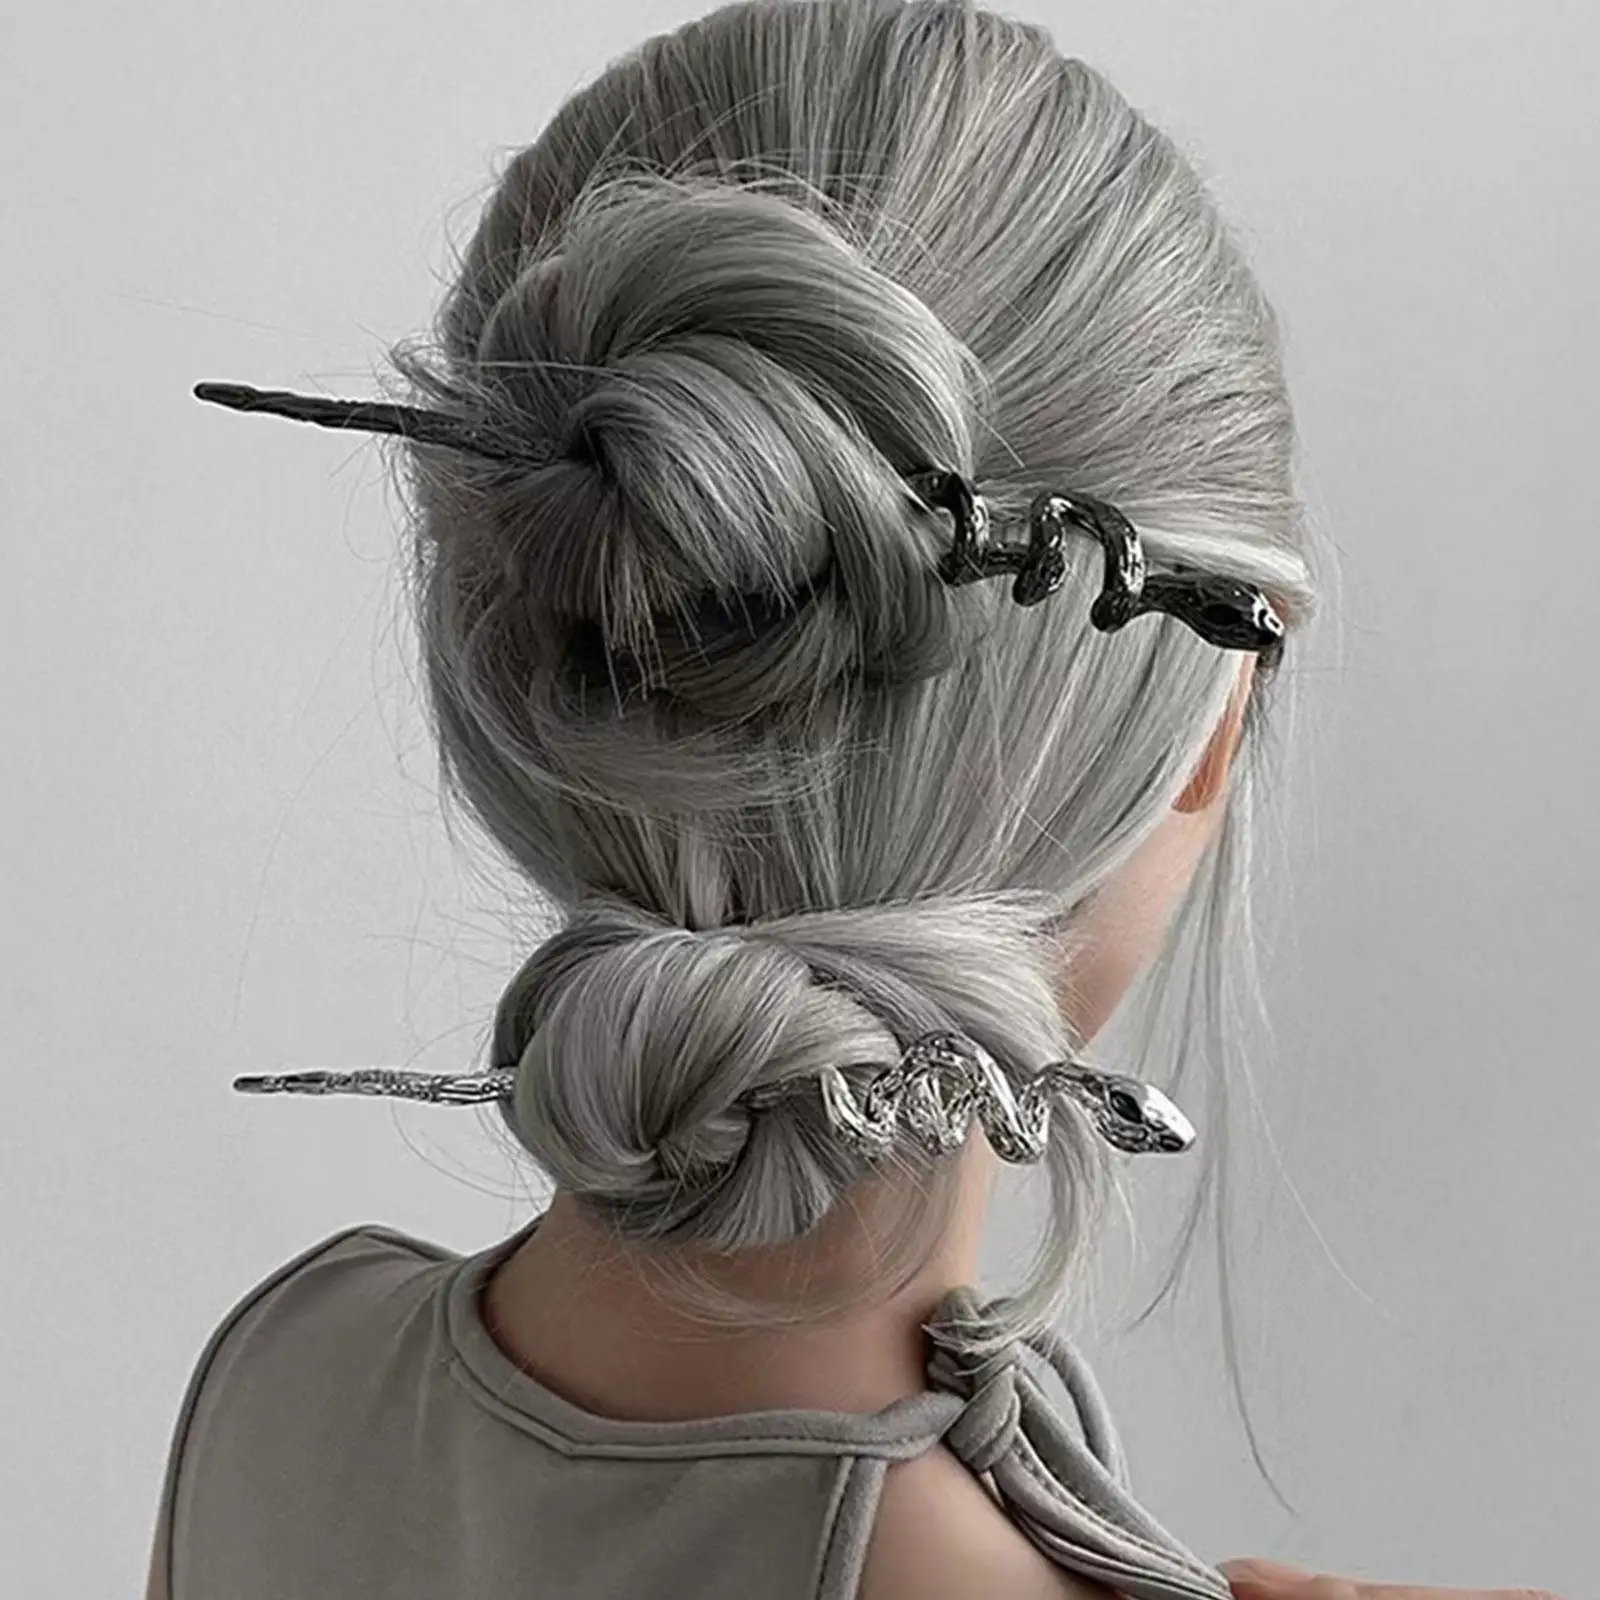 

2022 шпилька для волос в виде змеи в стиле панк, шпильки для волос с неправильной текстурой, металлическая стандартная прическа для женщин, ак...